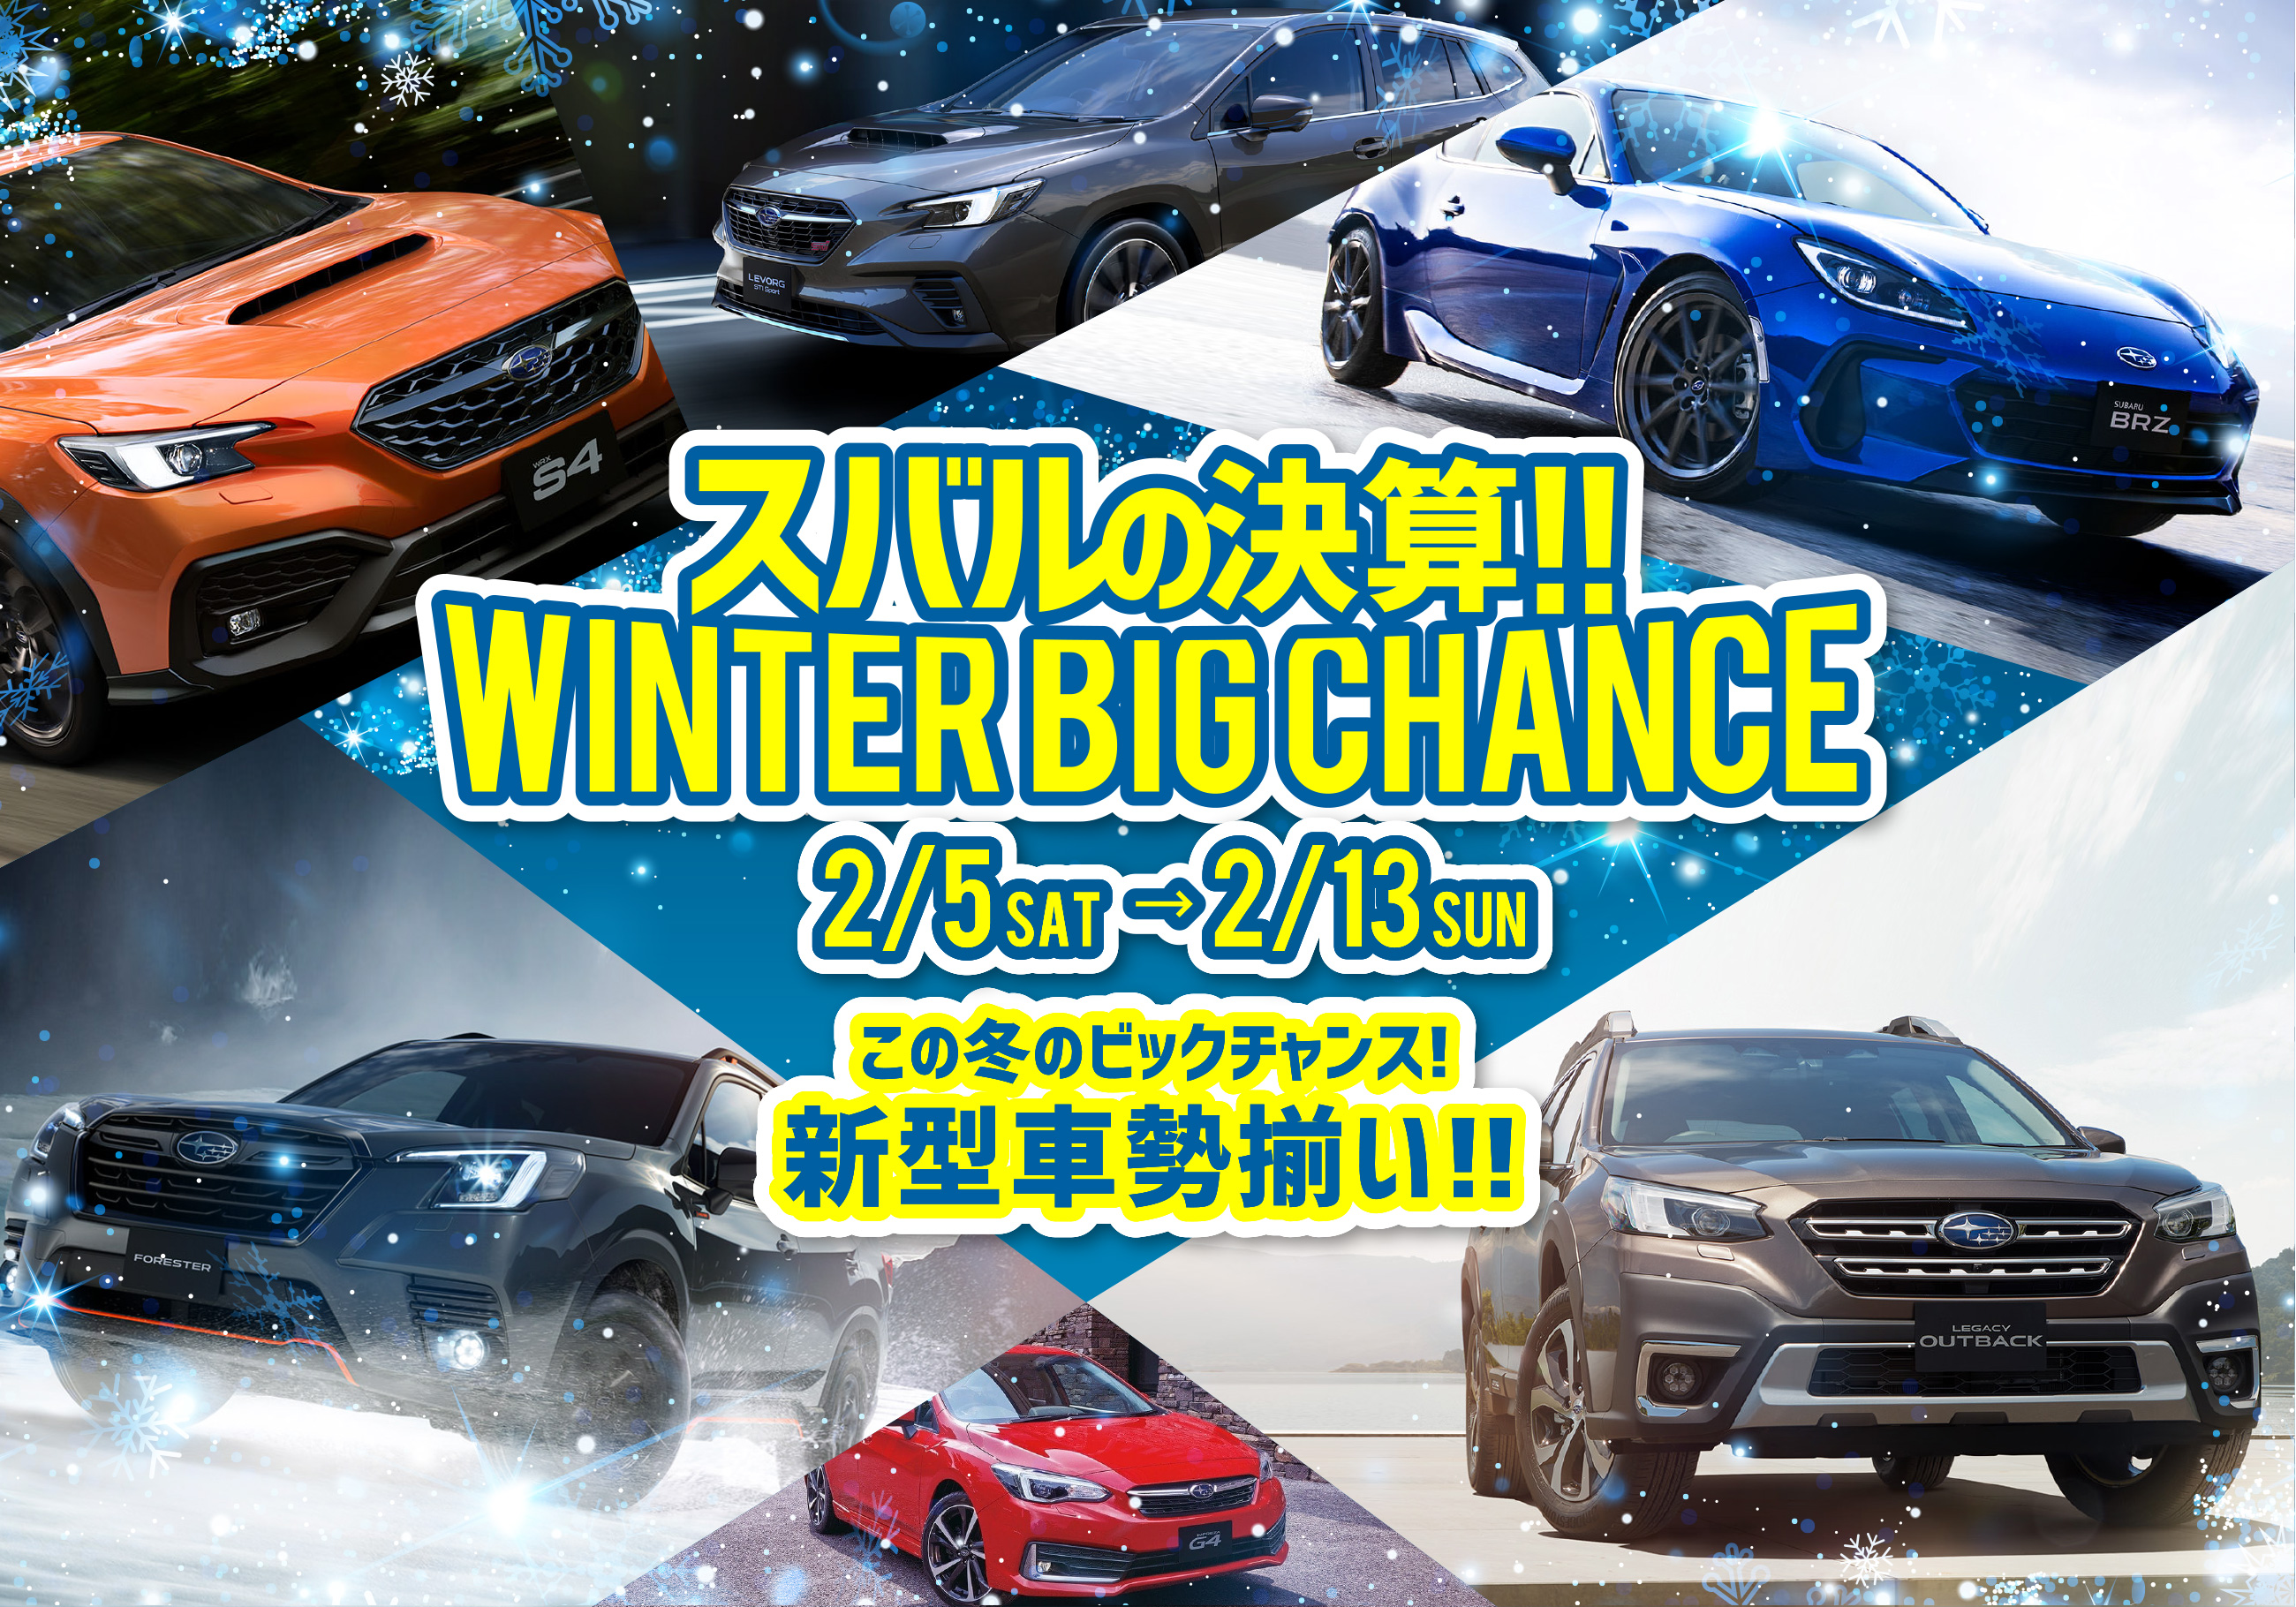 スバルの決算!!WINTER BIG CHANCE 2.5(SAT)→2.13(SUN)この冬のビッグチャンス！新型車勢揃い!!